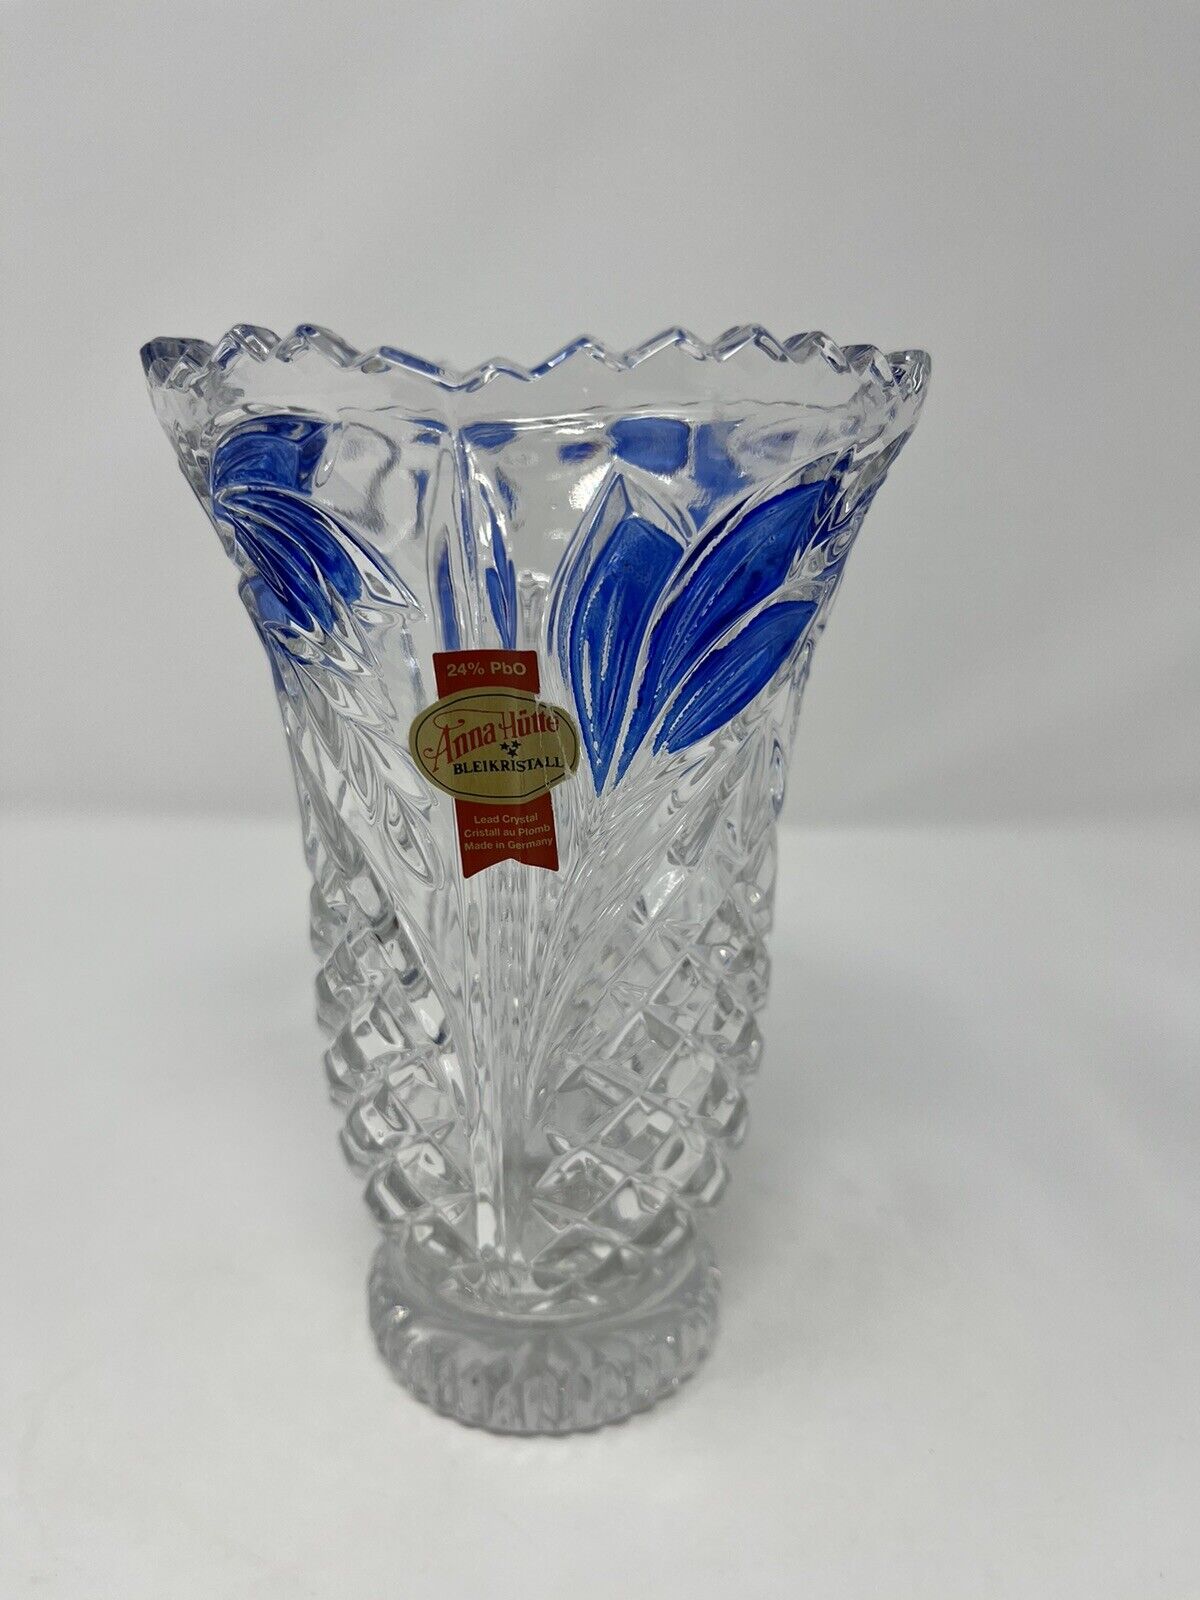 Beautiful Vintage Anna Hutte Blue Bleikristall Lead Crystal Vase Germany 6.25”